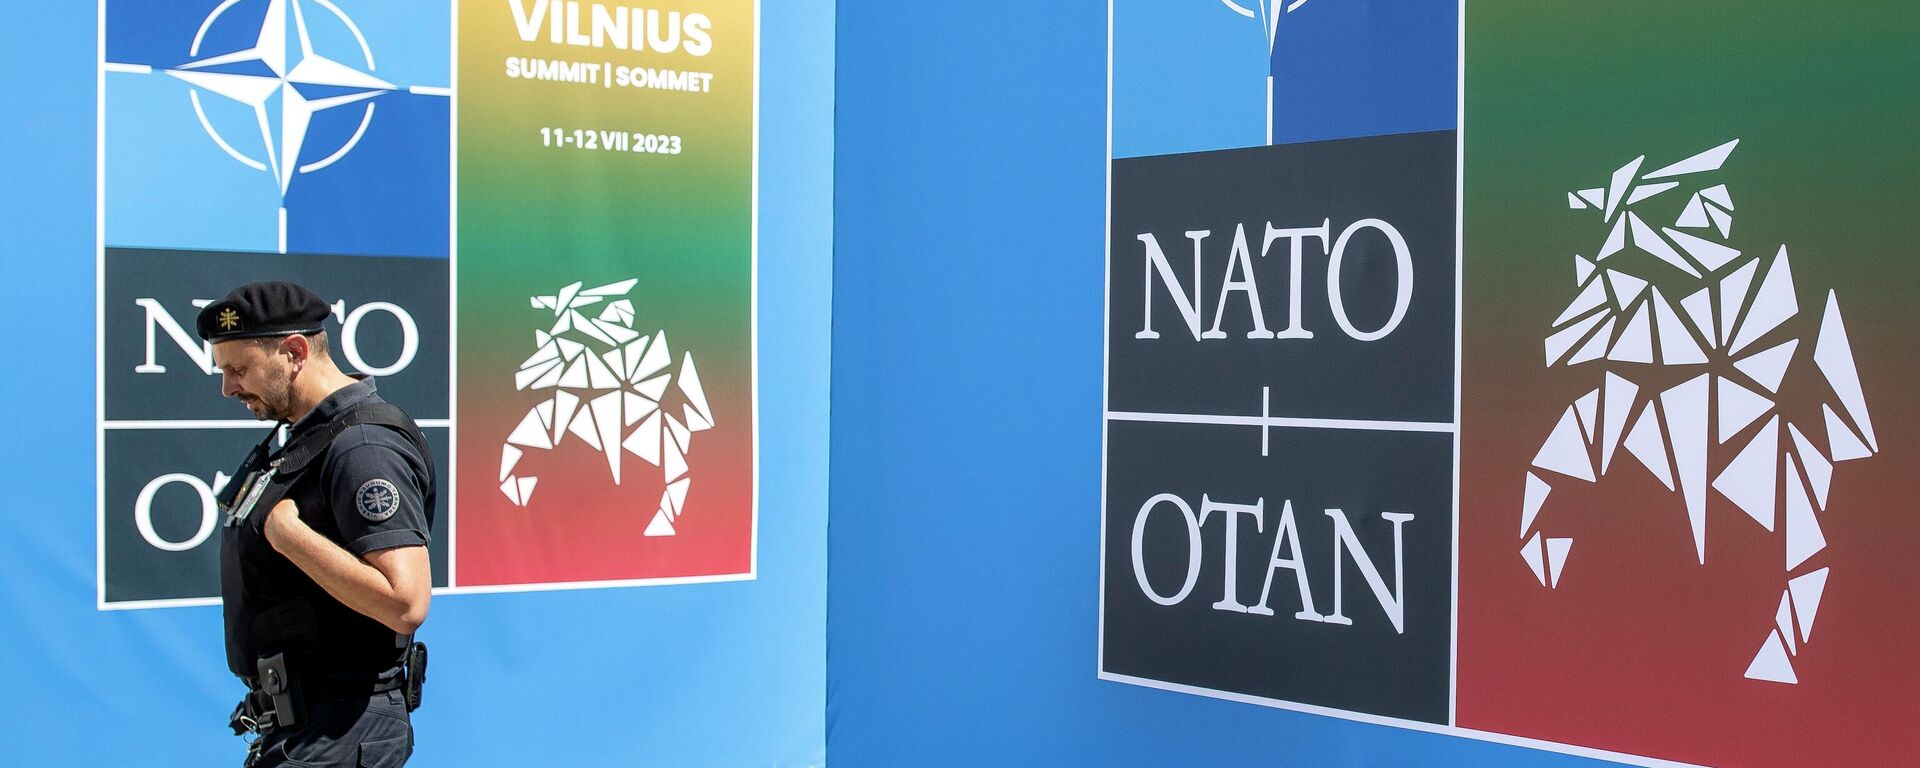 Pripadnik obezbeđenja ispred logoa NATO-a na samitu u Vilnjusu - Sputnik Srbija, 1920, 12.07.2023